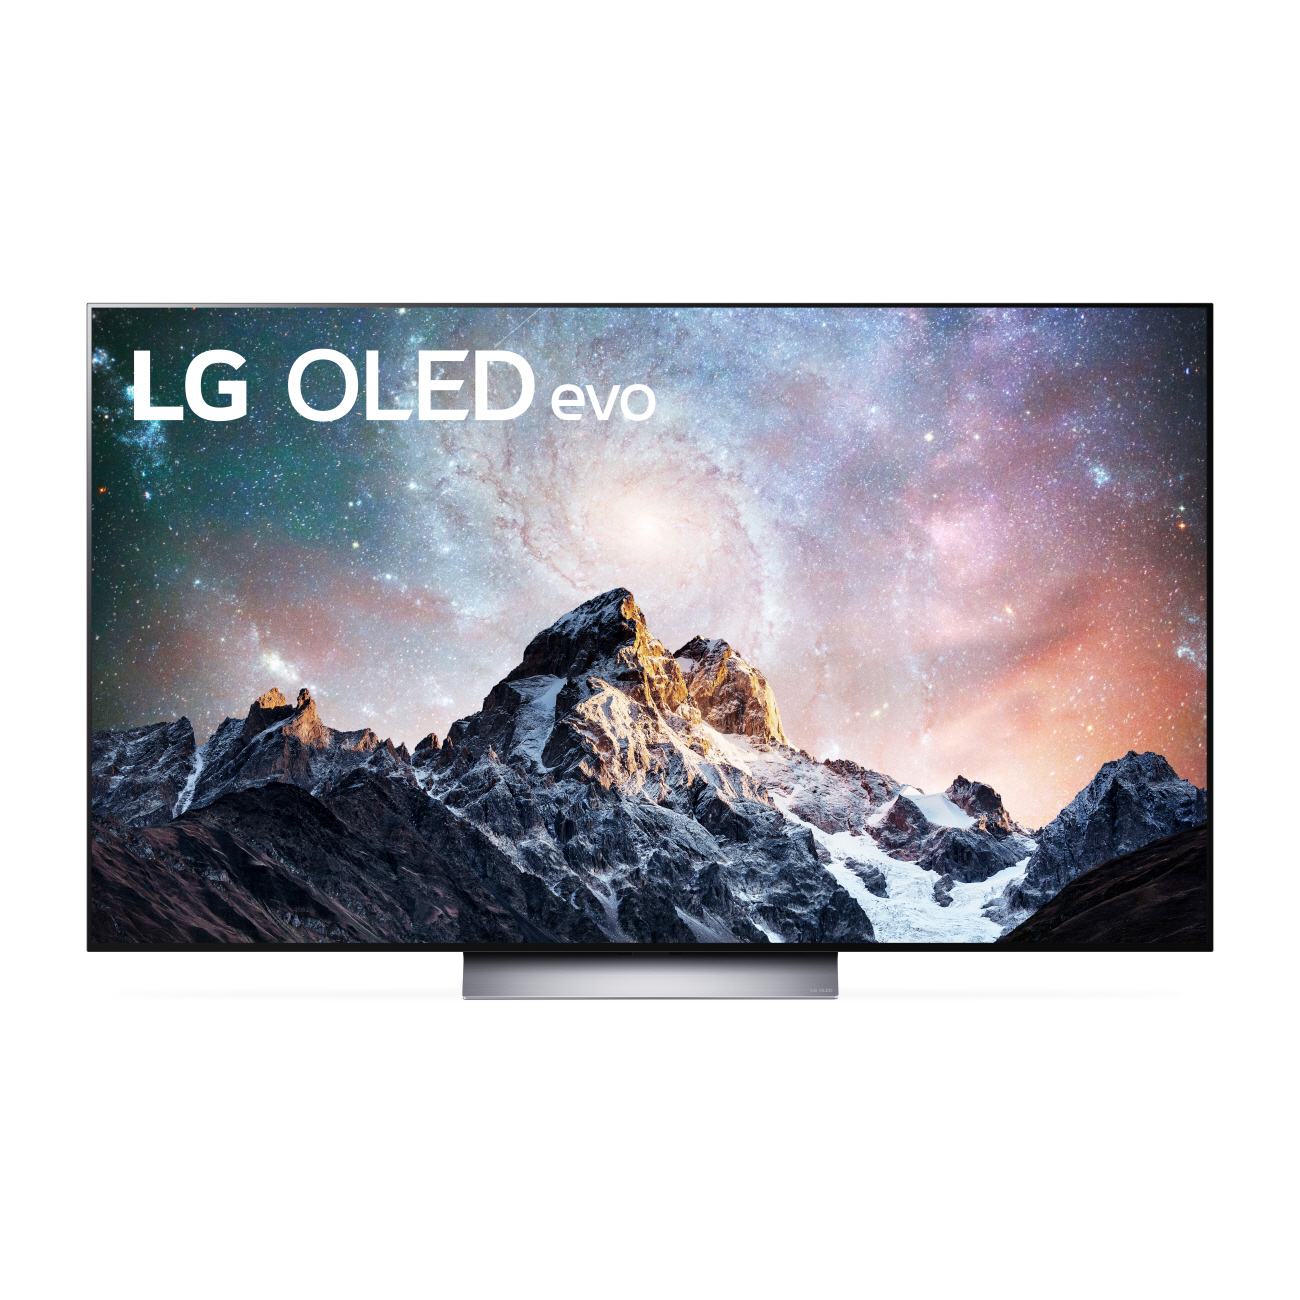 Uusien LG-televisioiden monipuoliset ominaisuudet uudistavat katselu- ja käyttäjäkokemuksen